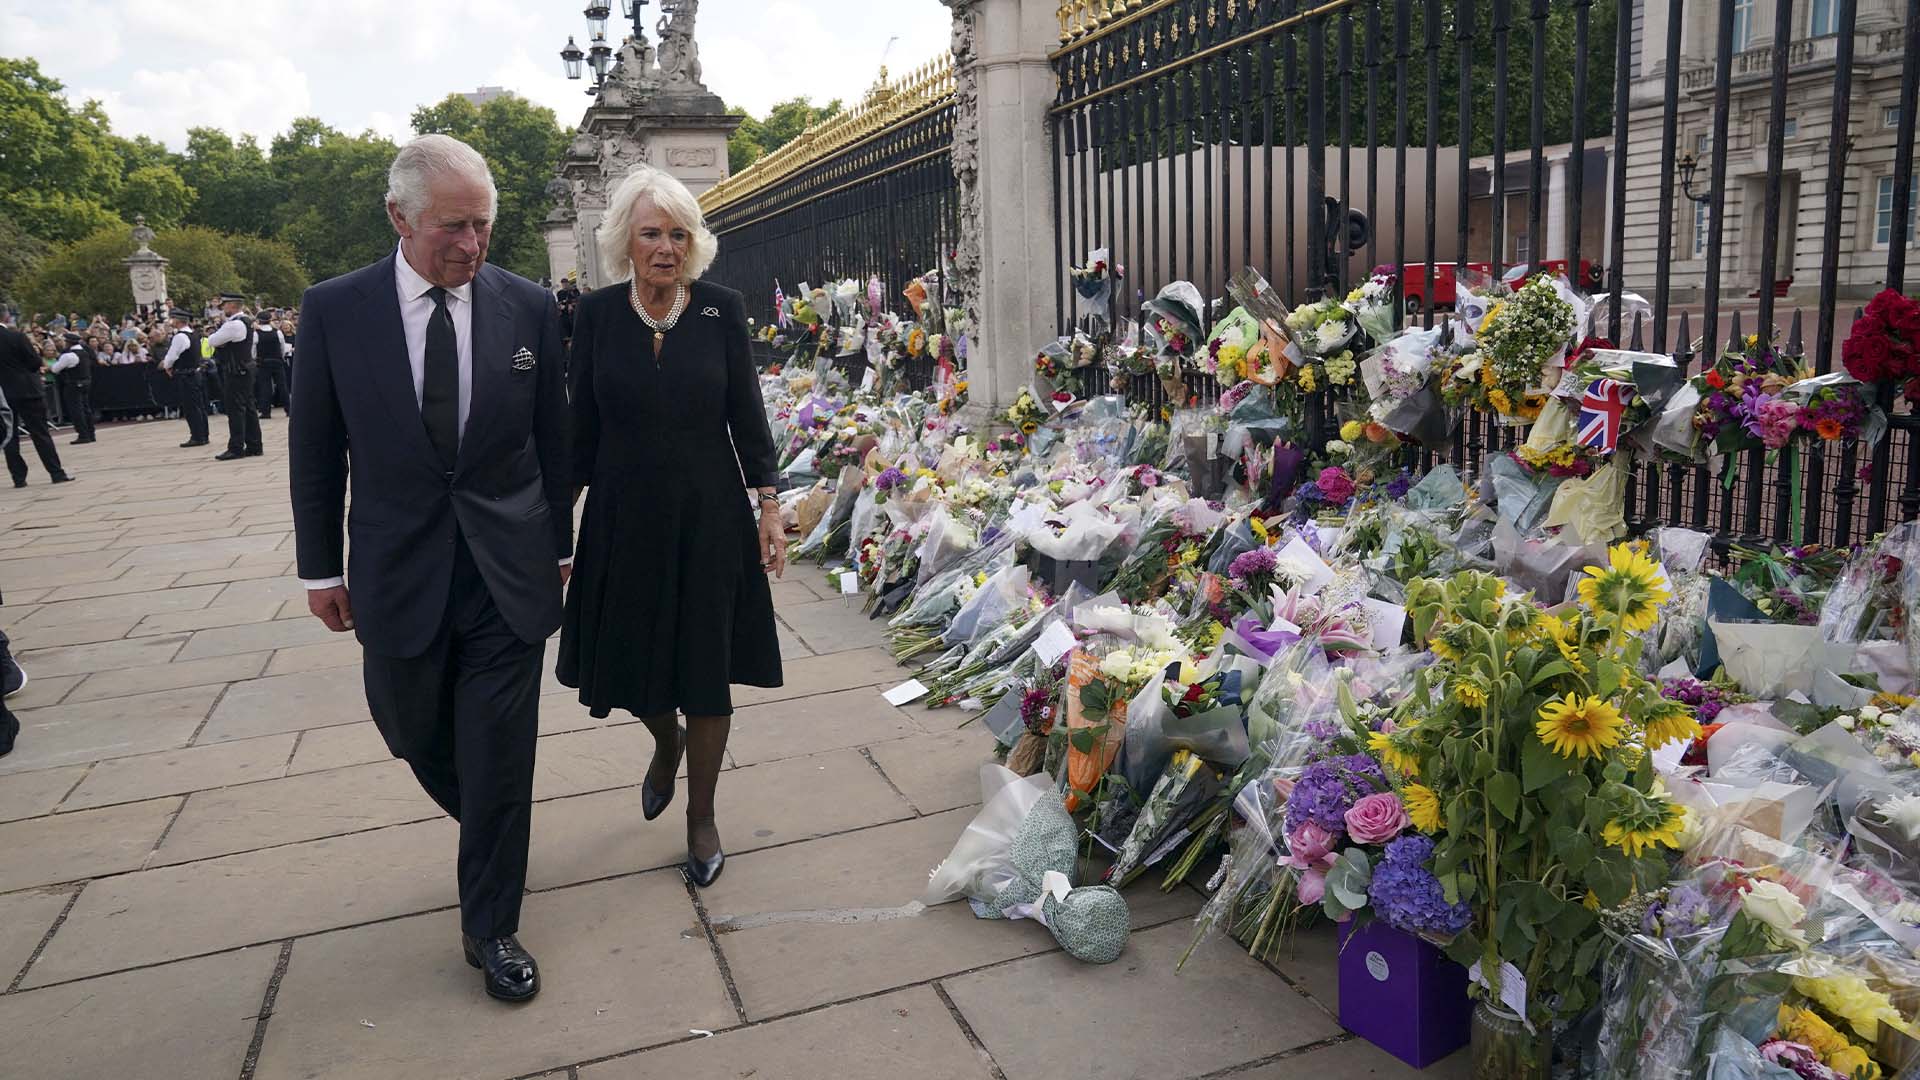 Le roi Charles III, à gauche, et Camilla, la reine consort, passent devant des hommages floraux laissés devant le palais de Buckingham après la mort jeudi de la reine Elizabeth II, à Londres, le vendredi 9 septembre